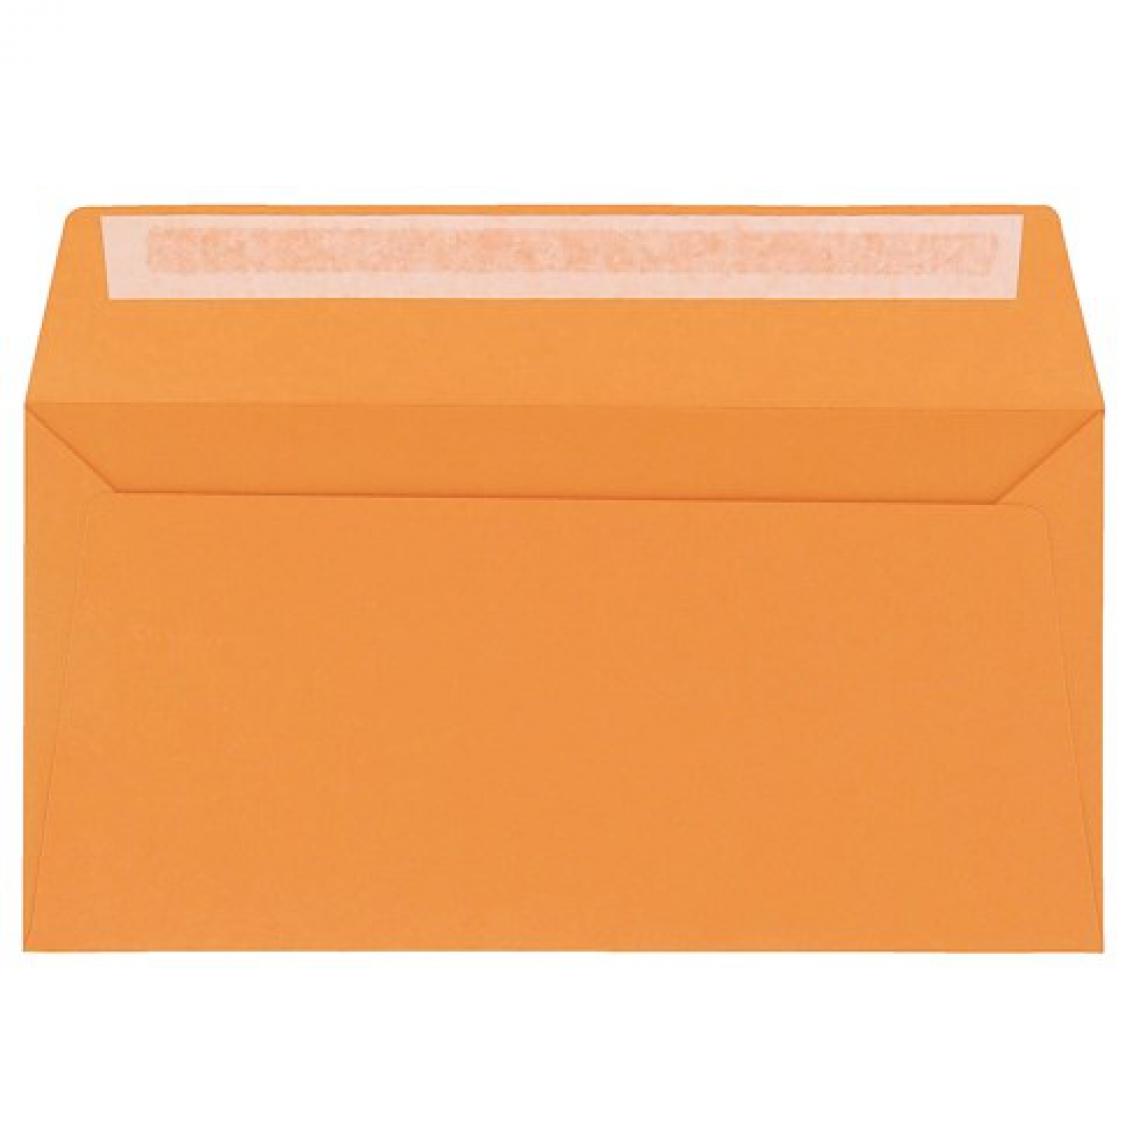 Clairefontaine - Enveloppe Pollen Clairefontaine clementine 110 x 220 mm - Paquet de 20 - Accessoires Bureau